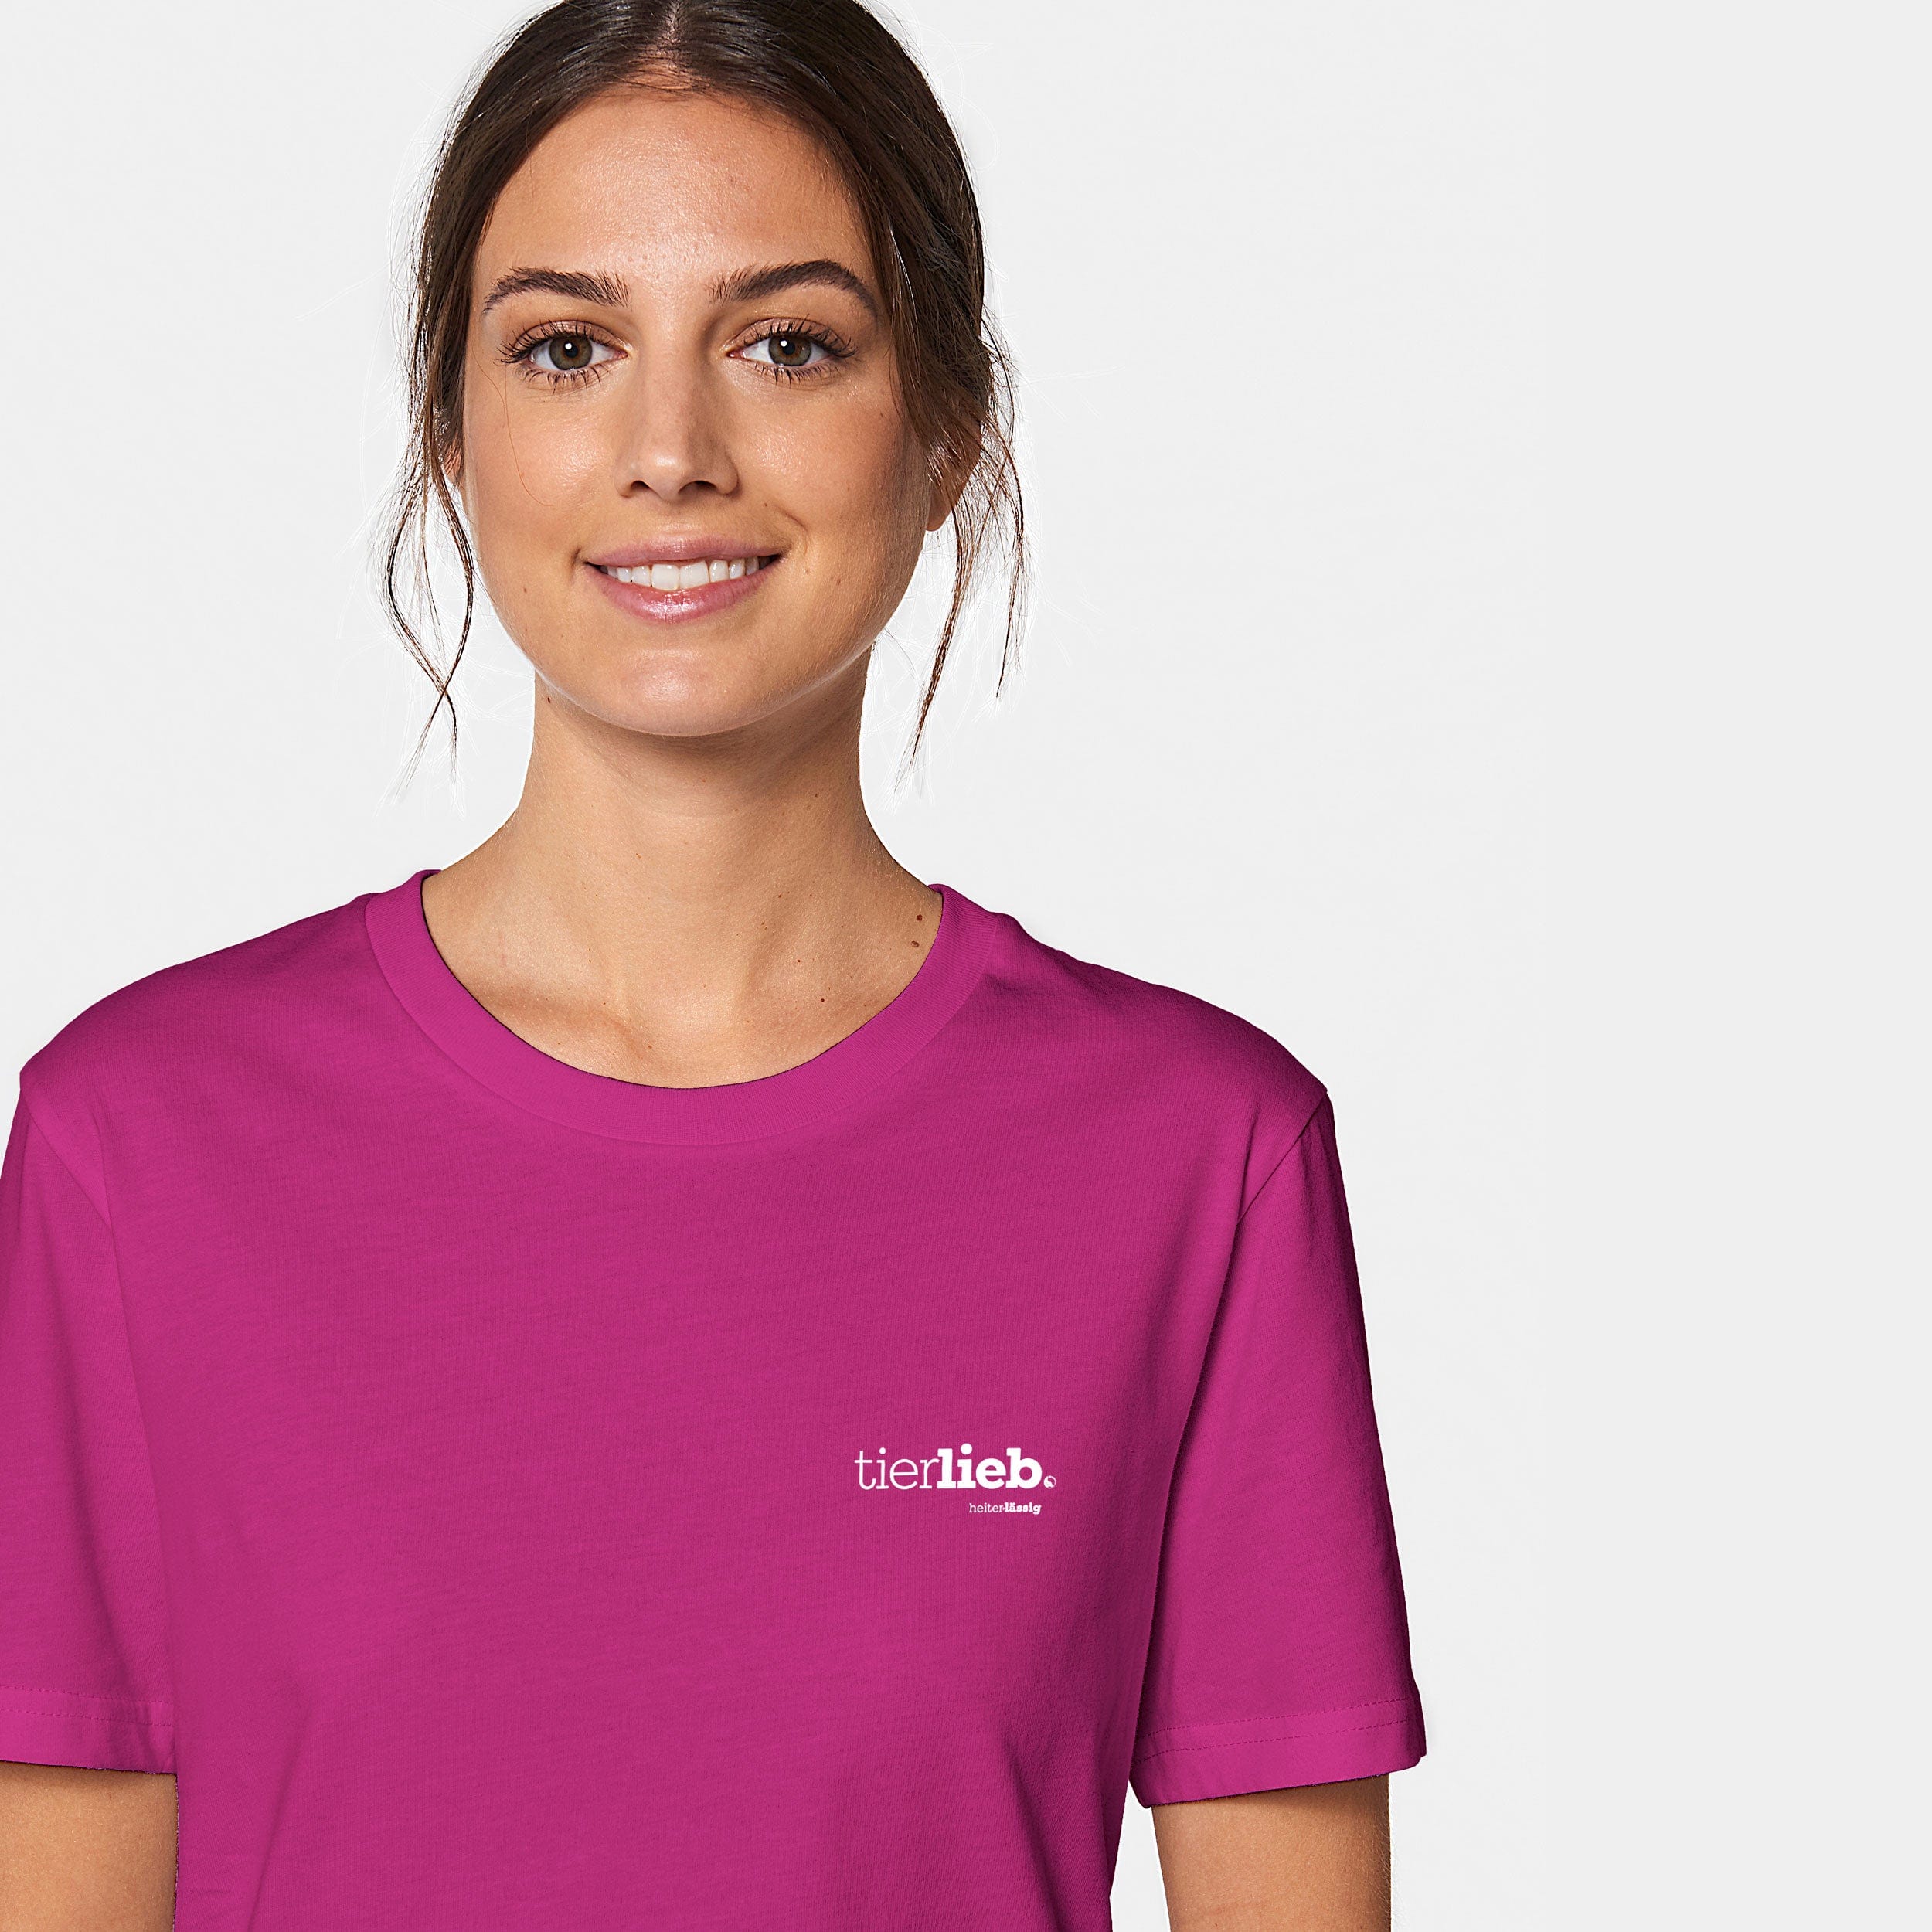 HEITER & LÄSSIG T-Shirt ORIGINAL "tierlieb" - aus nachhaltiger und fairer Produktion